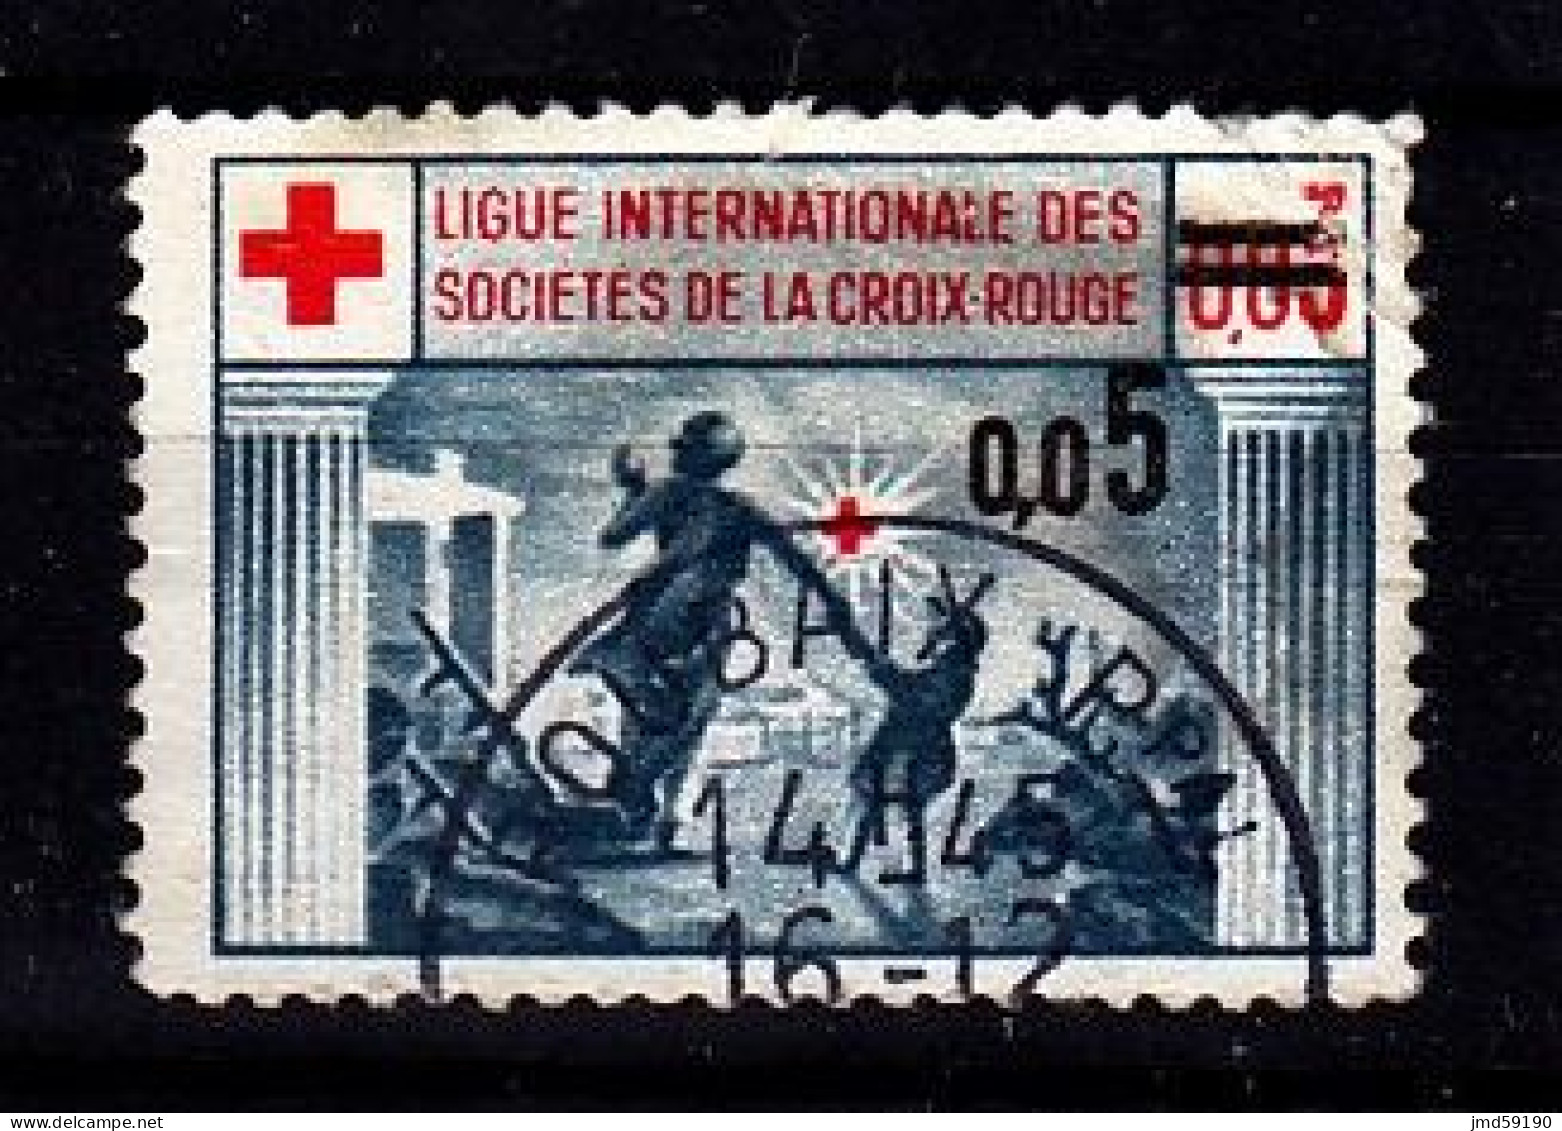 France - Vignette Oblitérée Ligue Internationale Des Sociétés De La Croix Rouge Avec Surcharge 0.05 - Red Cross